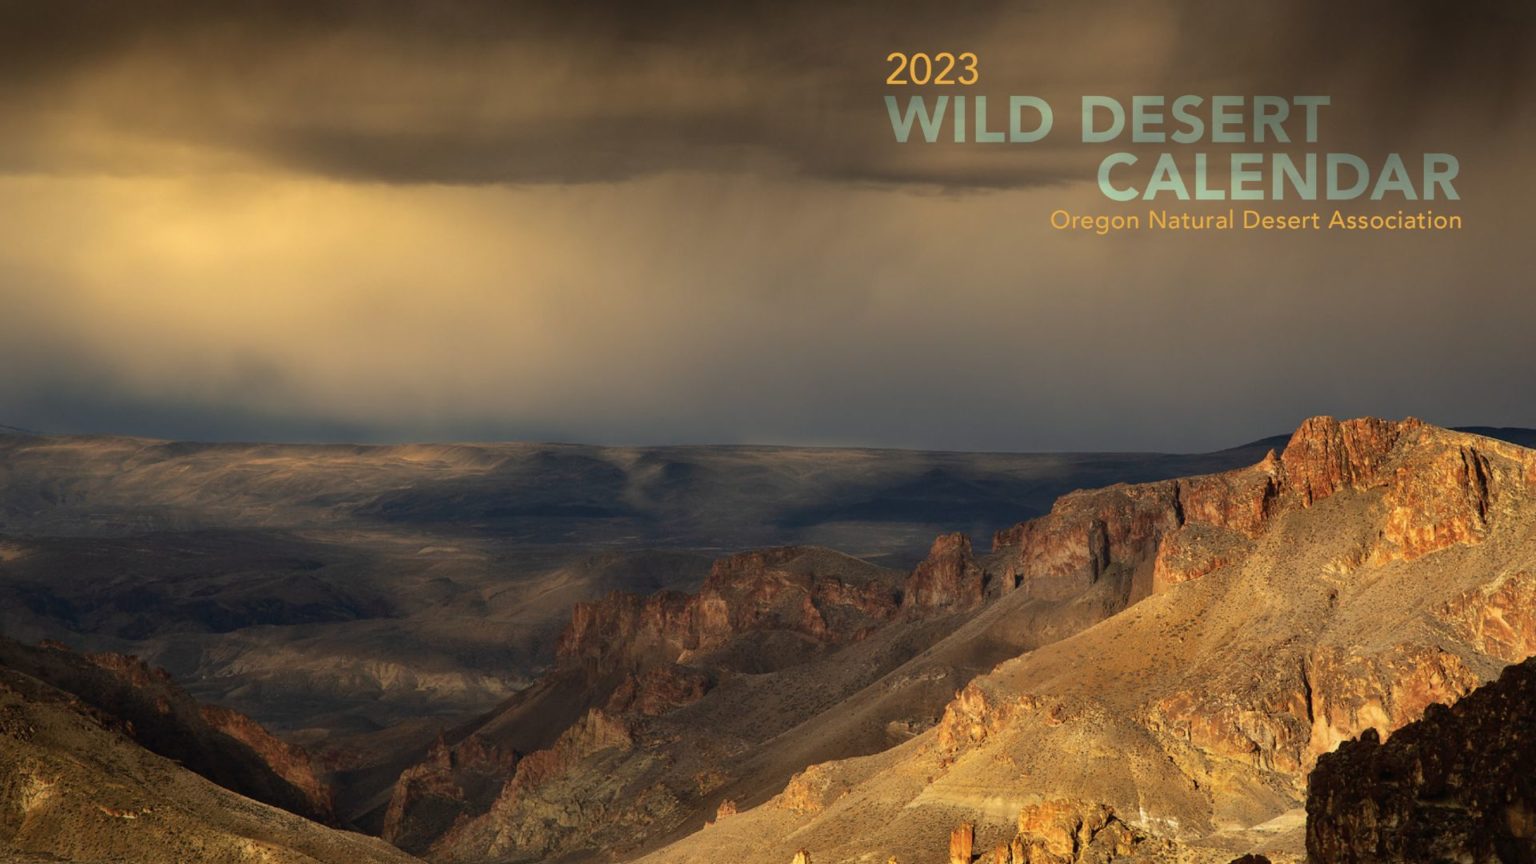 2023 Wild Desert Calendar cover 1920 x 1080 Oregon Natural Desert